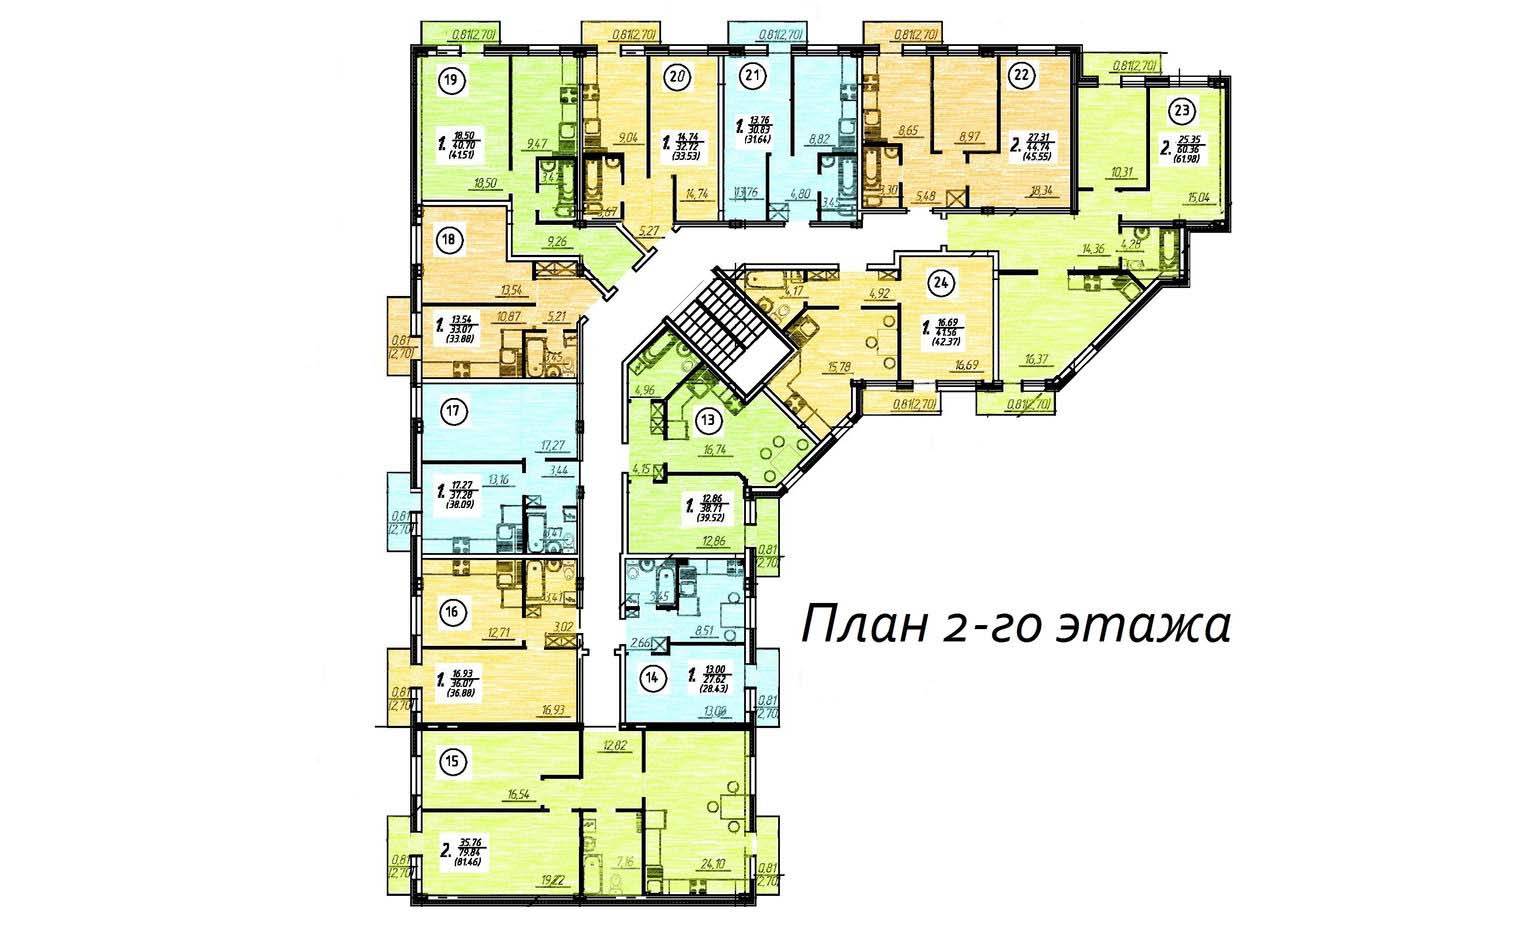 Plans Жилой дом Куб-HOUSE, Республиканская 38